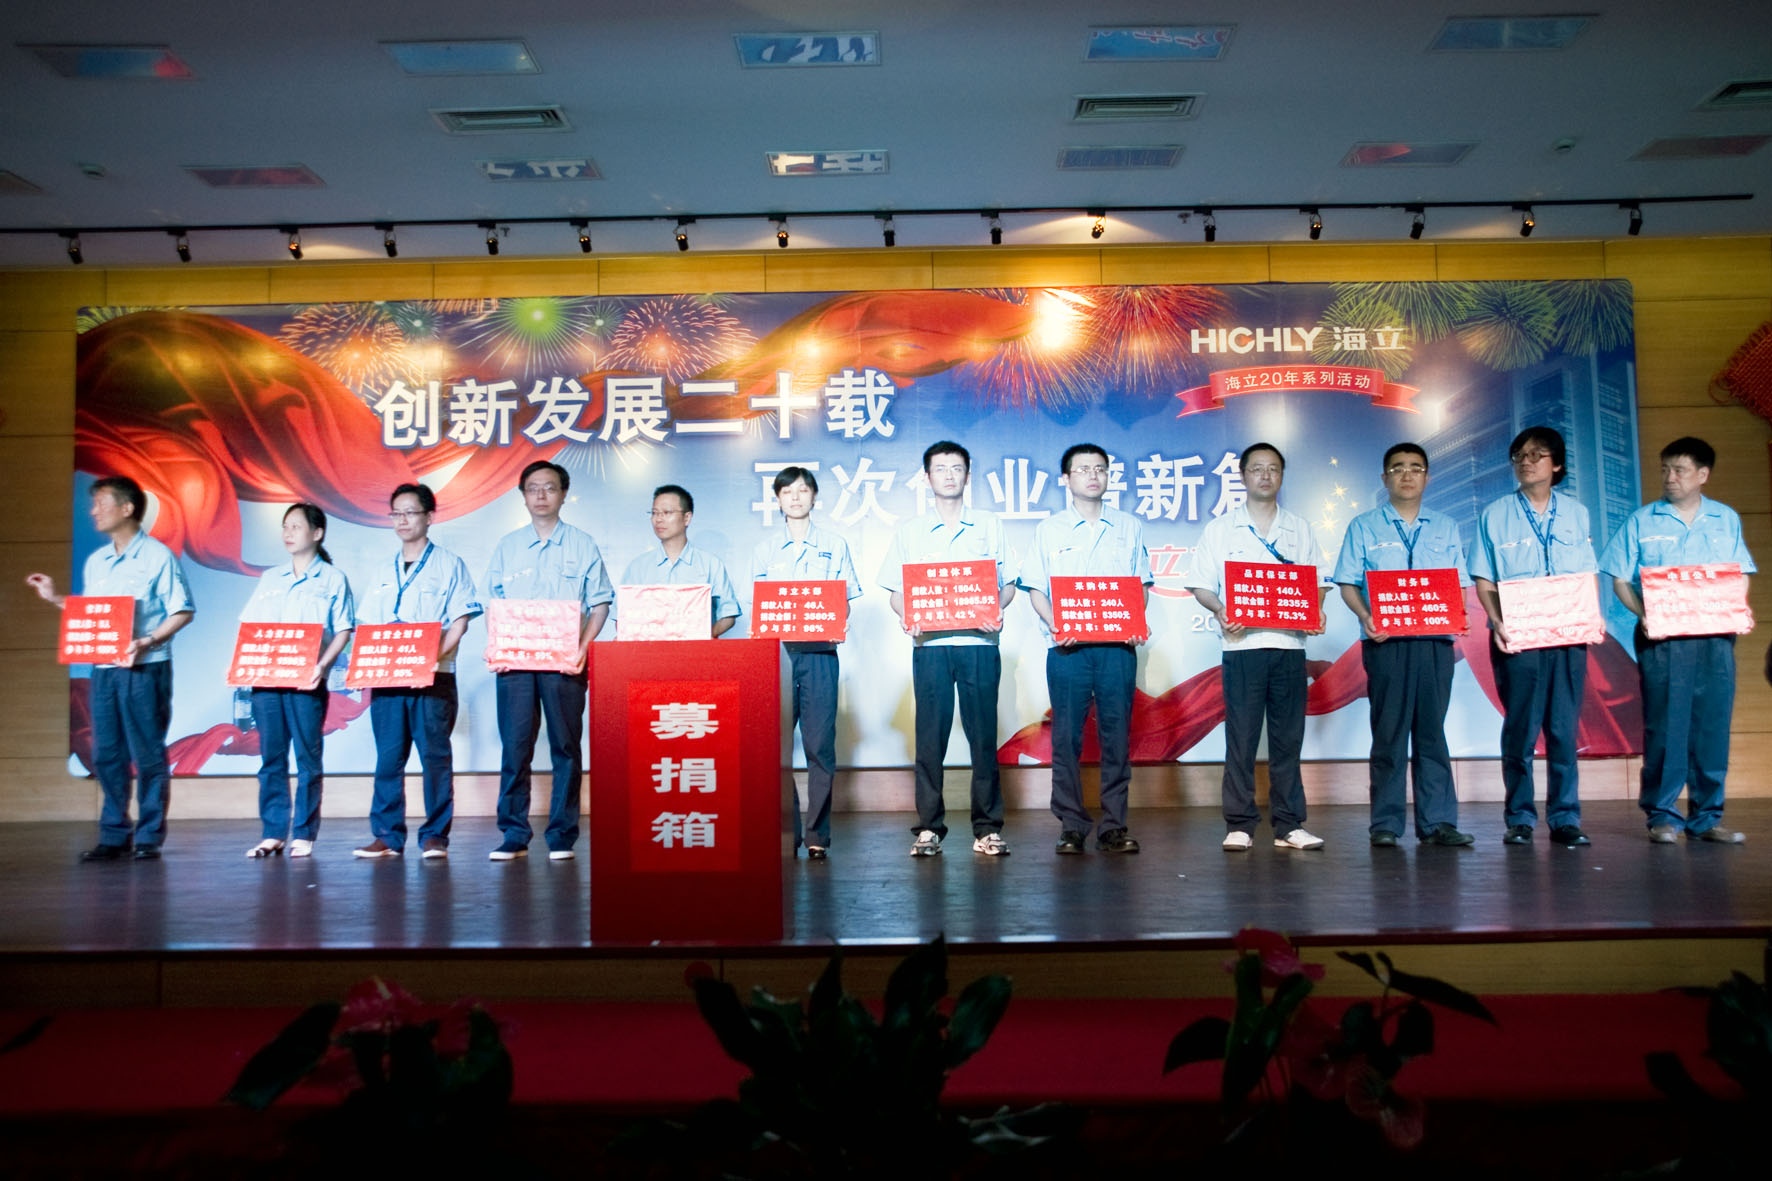 上海日立举行2012年度“海立之夏”晚会